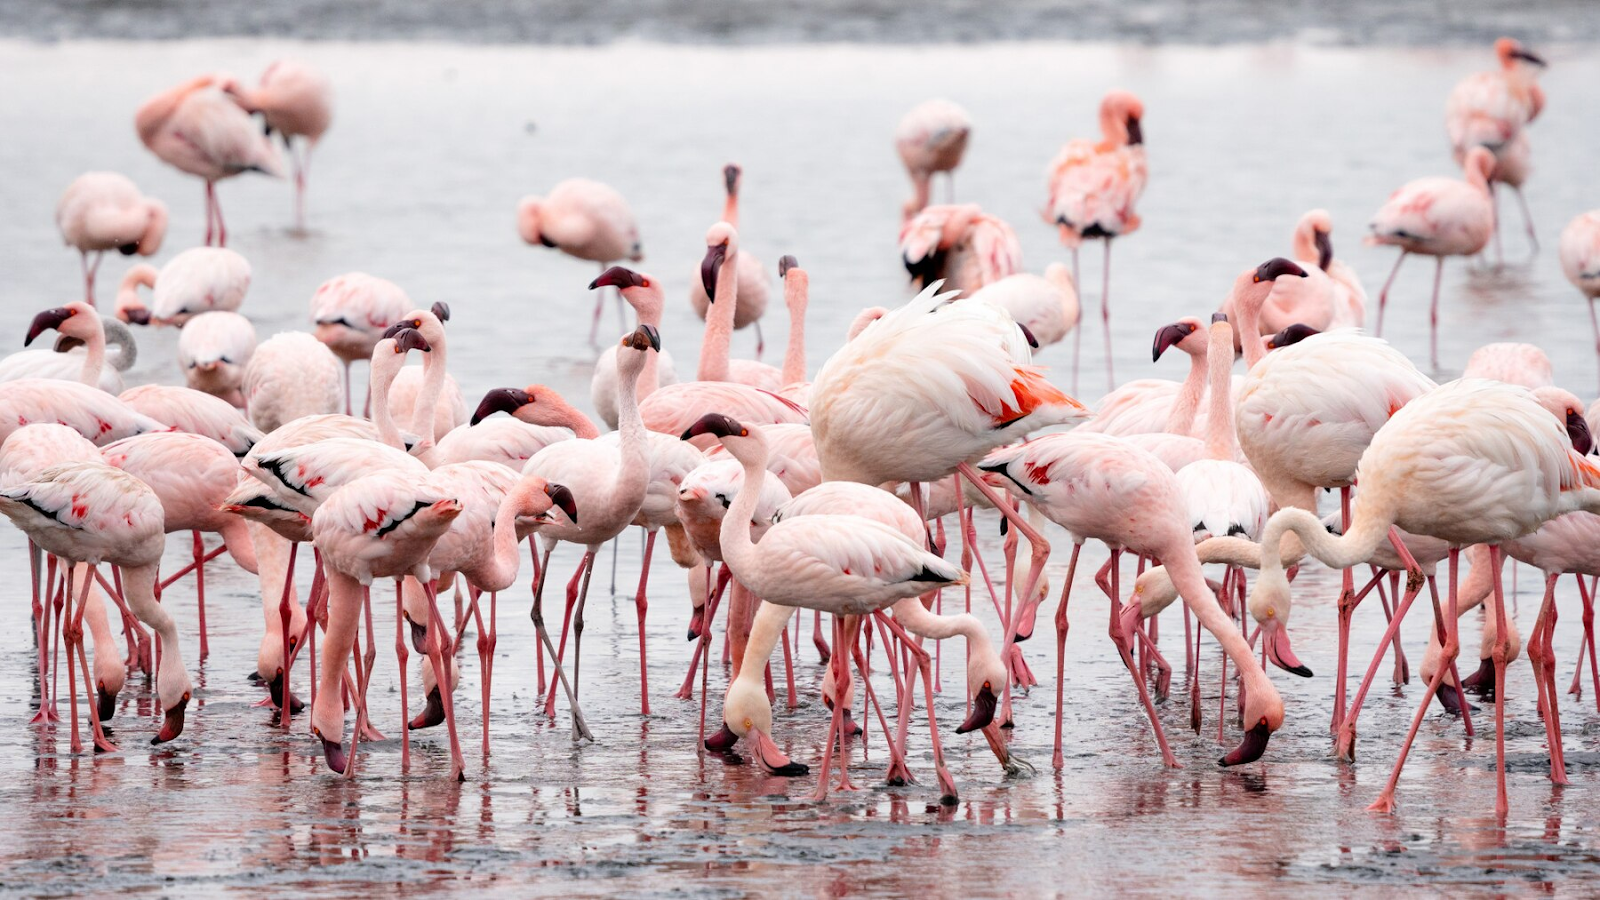 A flock of beautiful flamingos at a bay.